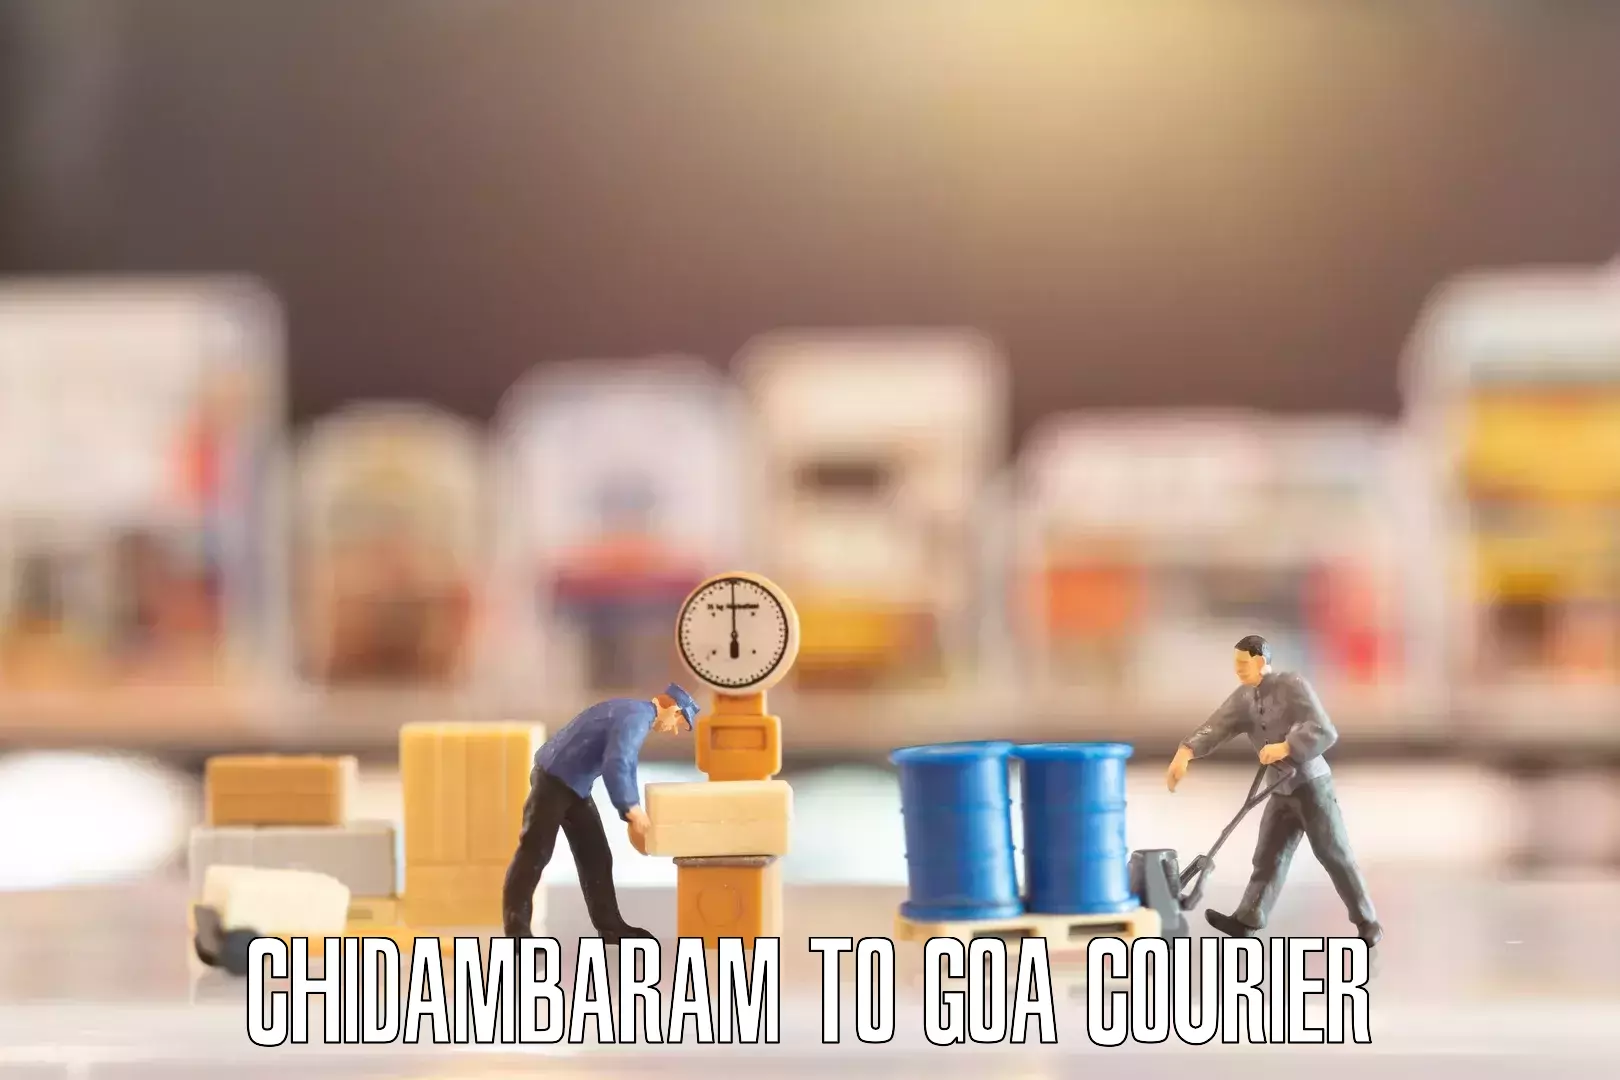 Furniture delivery service Chidambaram to Goa